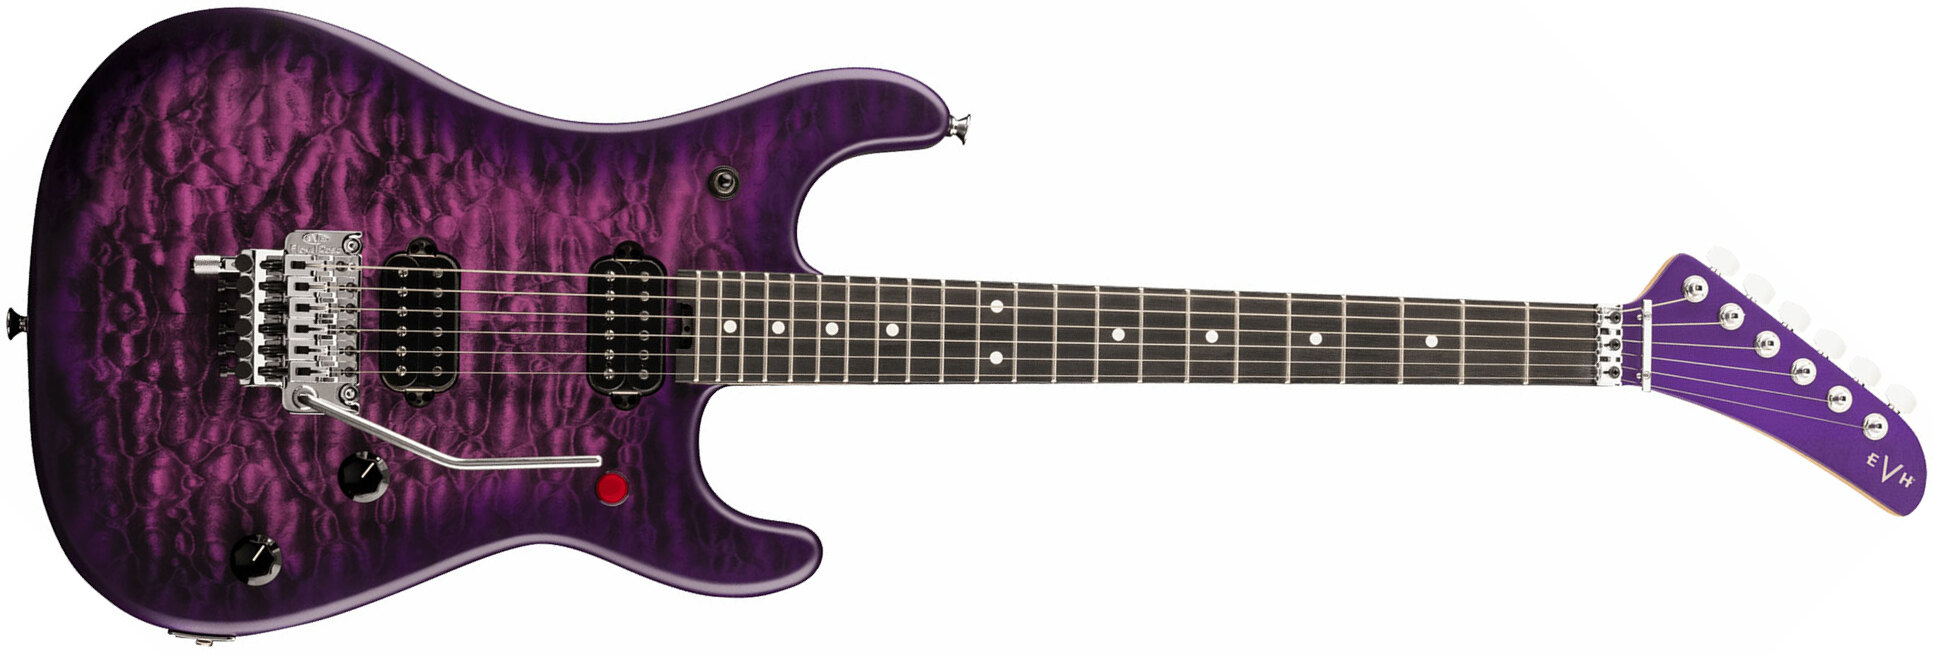 Evh 5150 Deluxe Qm Mex 2h Fr Eb - Purple Daze - Str shape electric guitar - Main picture